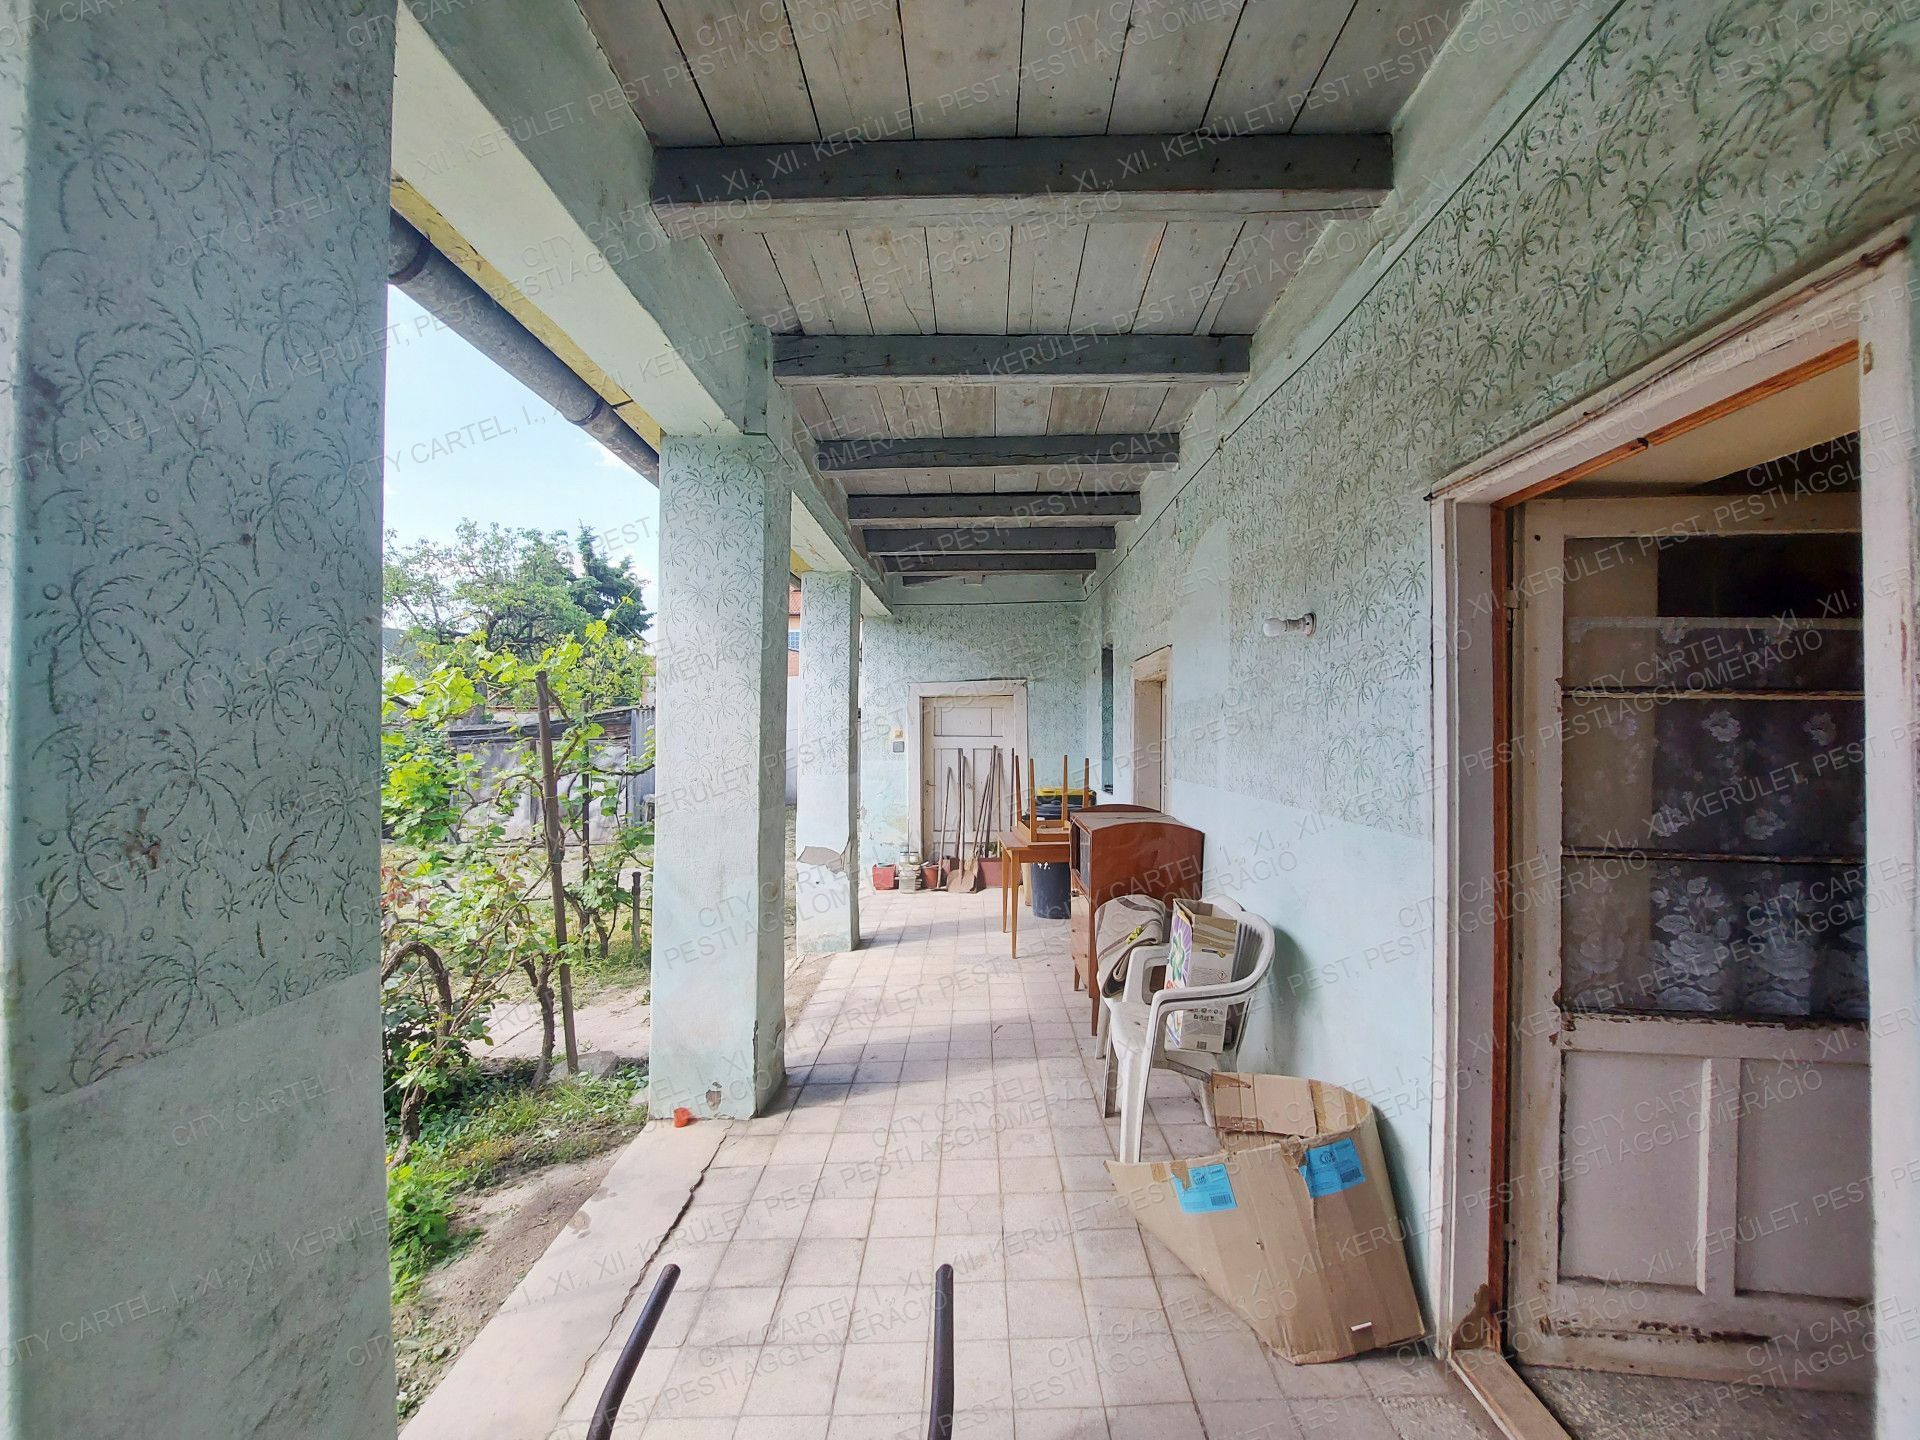 Bevezető áron, új építésű családi házak leköthetők Tatabányán, Bánhidán